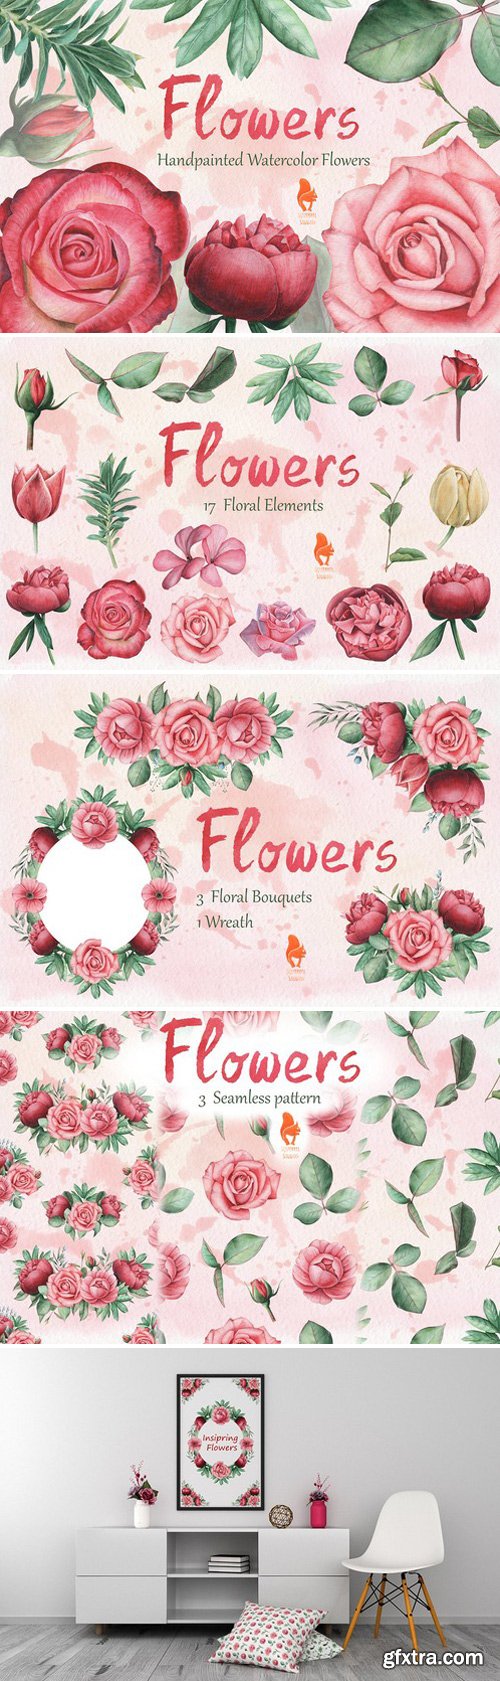 CM - Flowers, Handpainted Watercolor 1620316